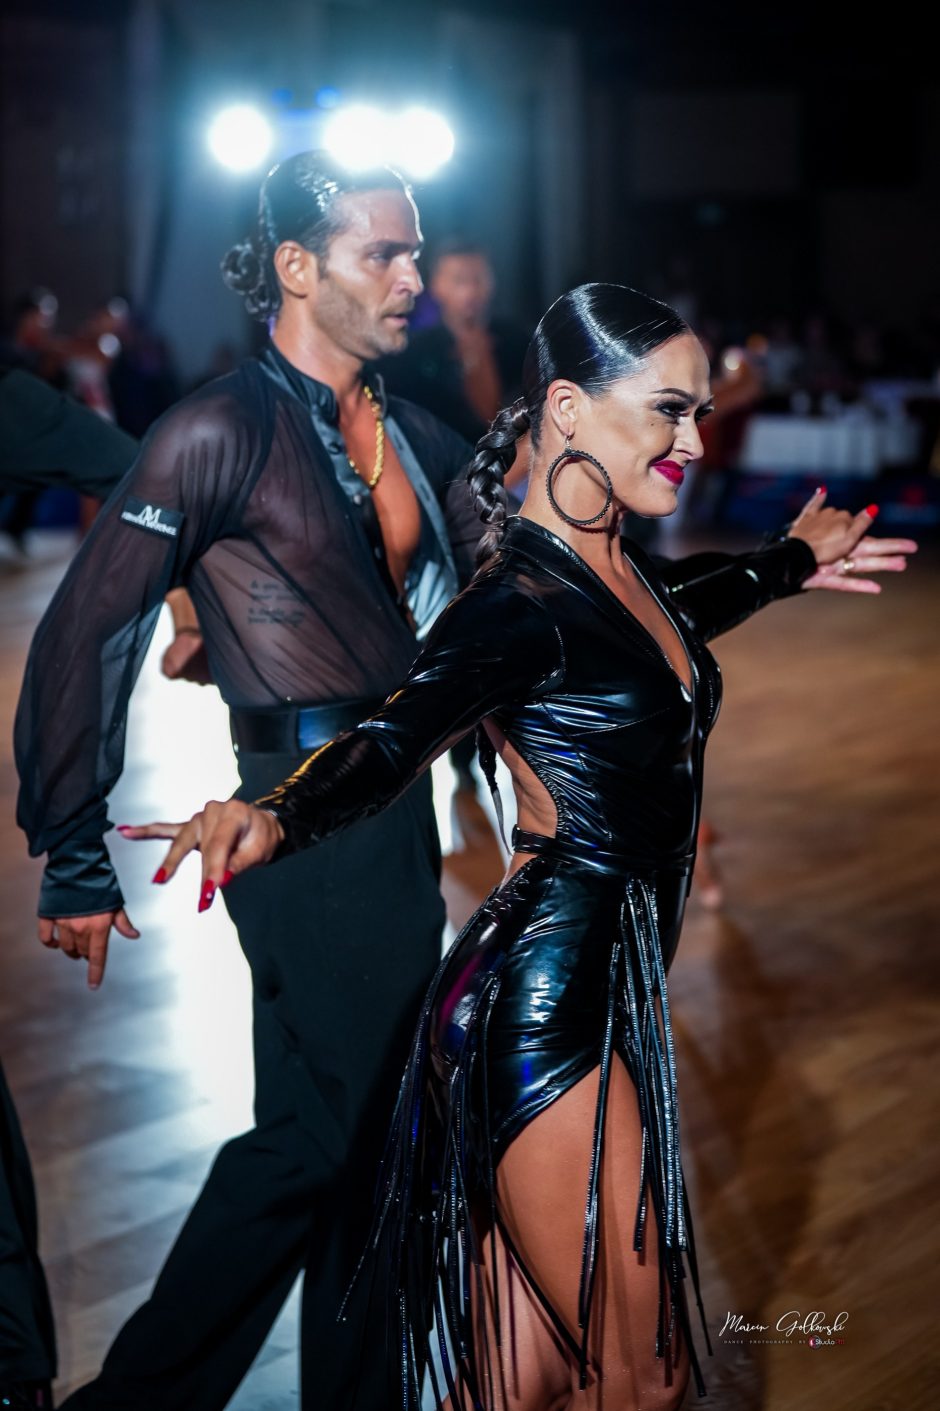 Lotynų Amerikos šokių čempionate visas pergales nuskynusi A. Vaidilaitė: ši akimirka ypatinga